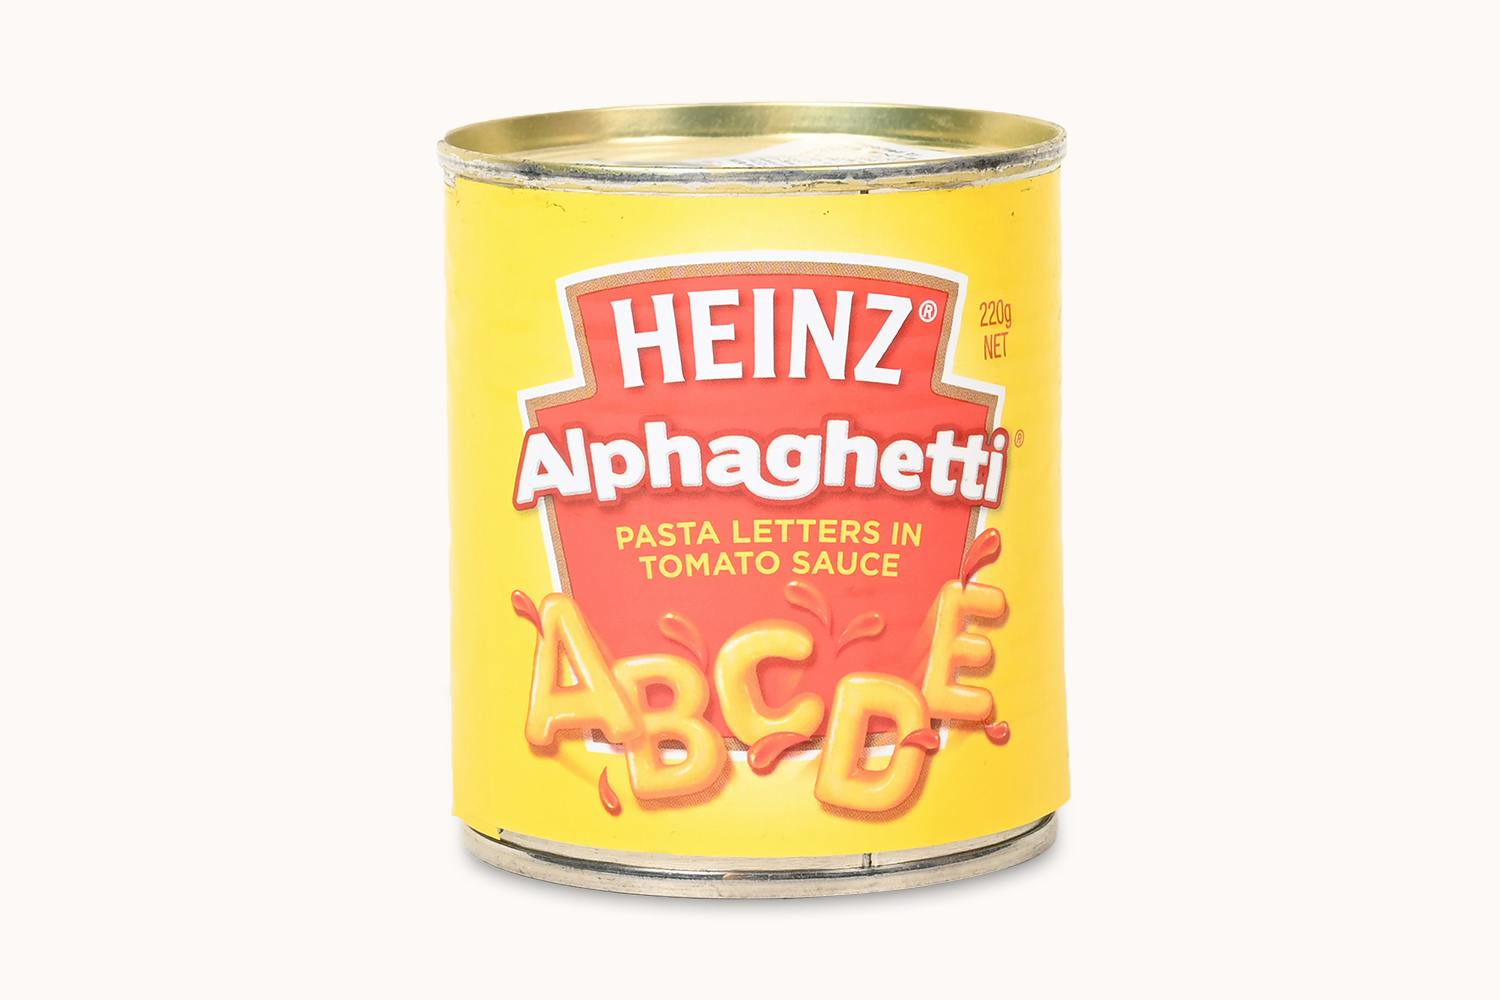 Heinz Alphaghetti Pasta Letters in Tomato Sauce